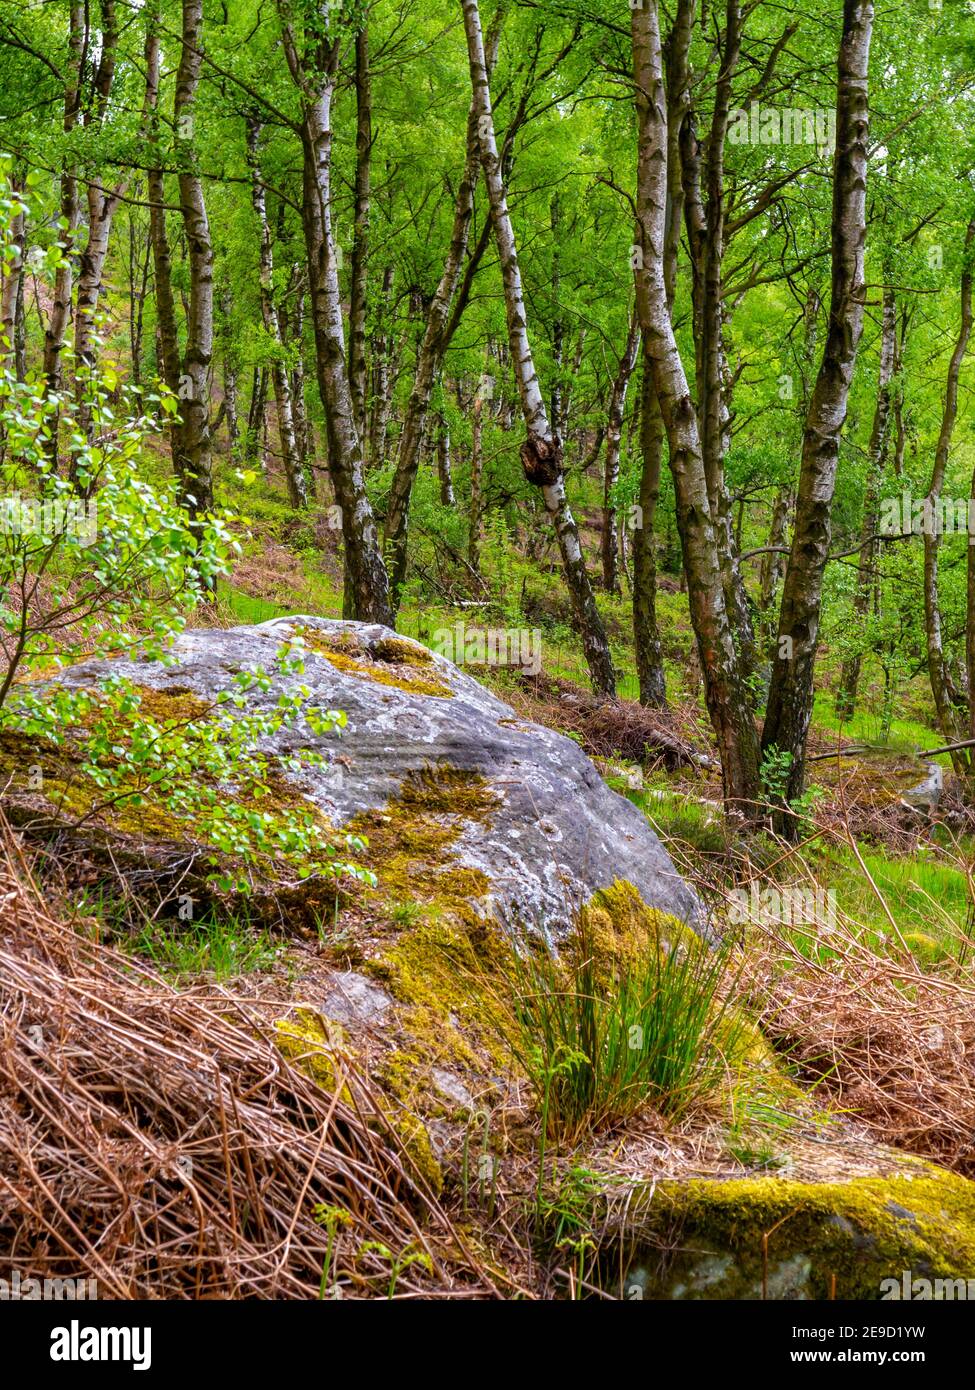 Paysage du début de l'été avec des bouleaux argentés et des rochers à Birchen Edge près de Baslow dans le parc national de Peak District Derbyshire Dales Angleterre Royaume-Uni Banque D'Images